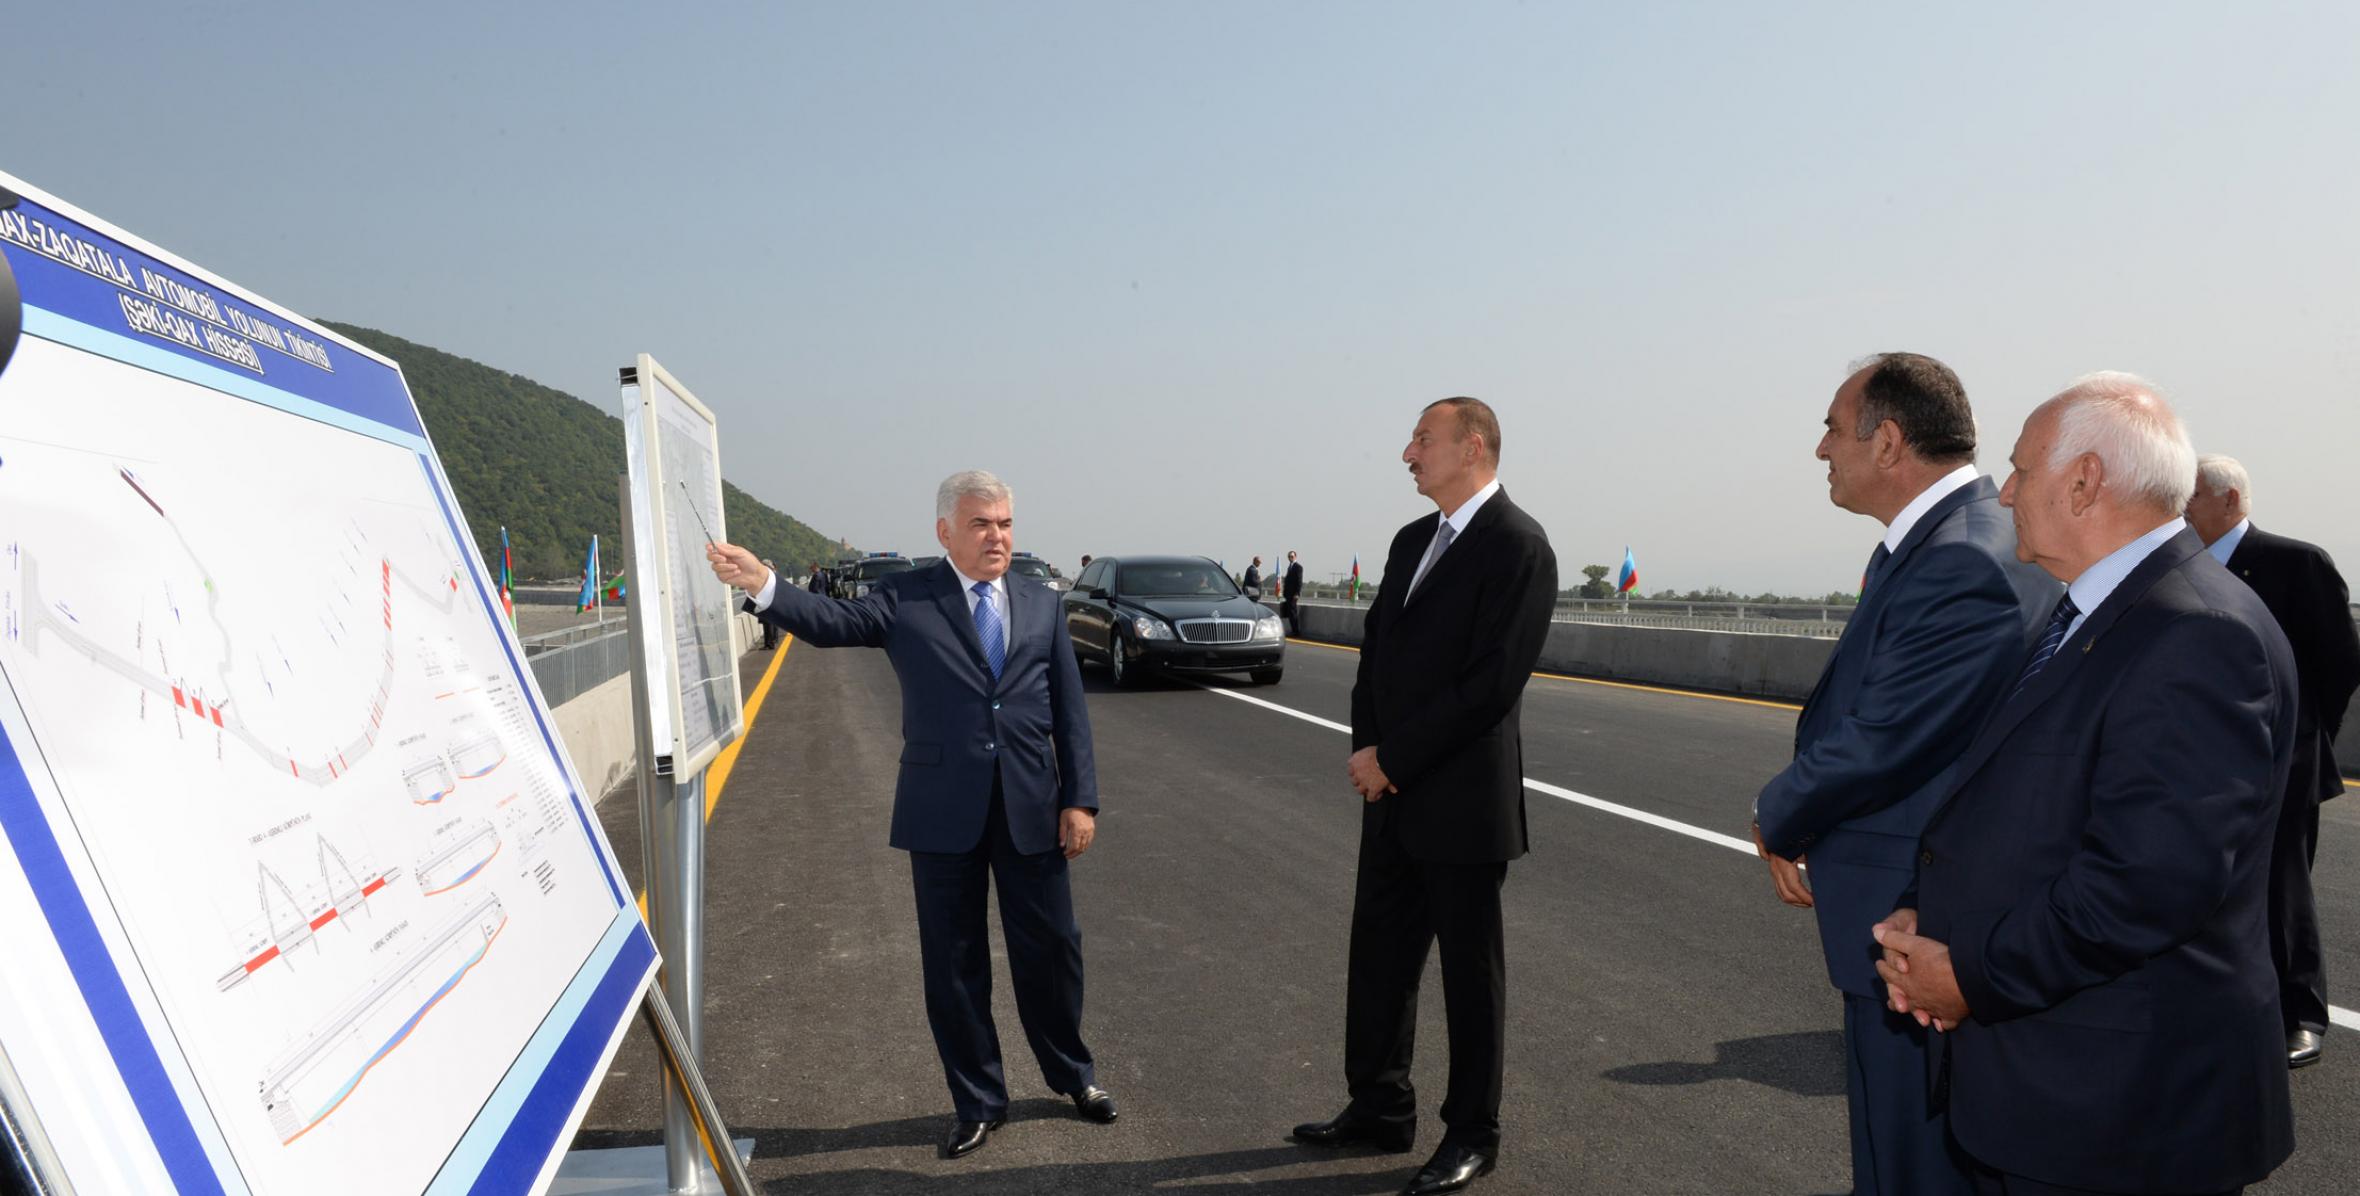 İlham Əliyev yenidən qurulan Şəki-Qax-Zaqatala avtomobil yolunun Şəki-Qax hissəsinin açılışında iştirak etmişdir